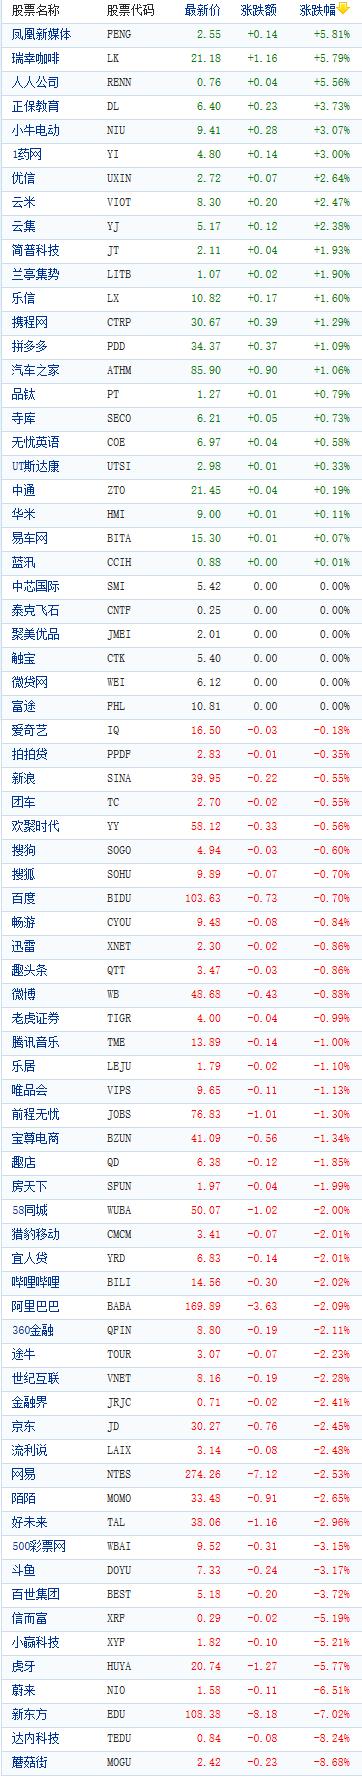 中国概念股周二收盘多数下跌 蘑菇街跌逾8%